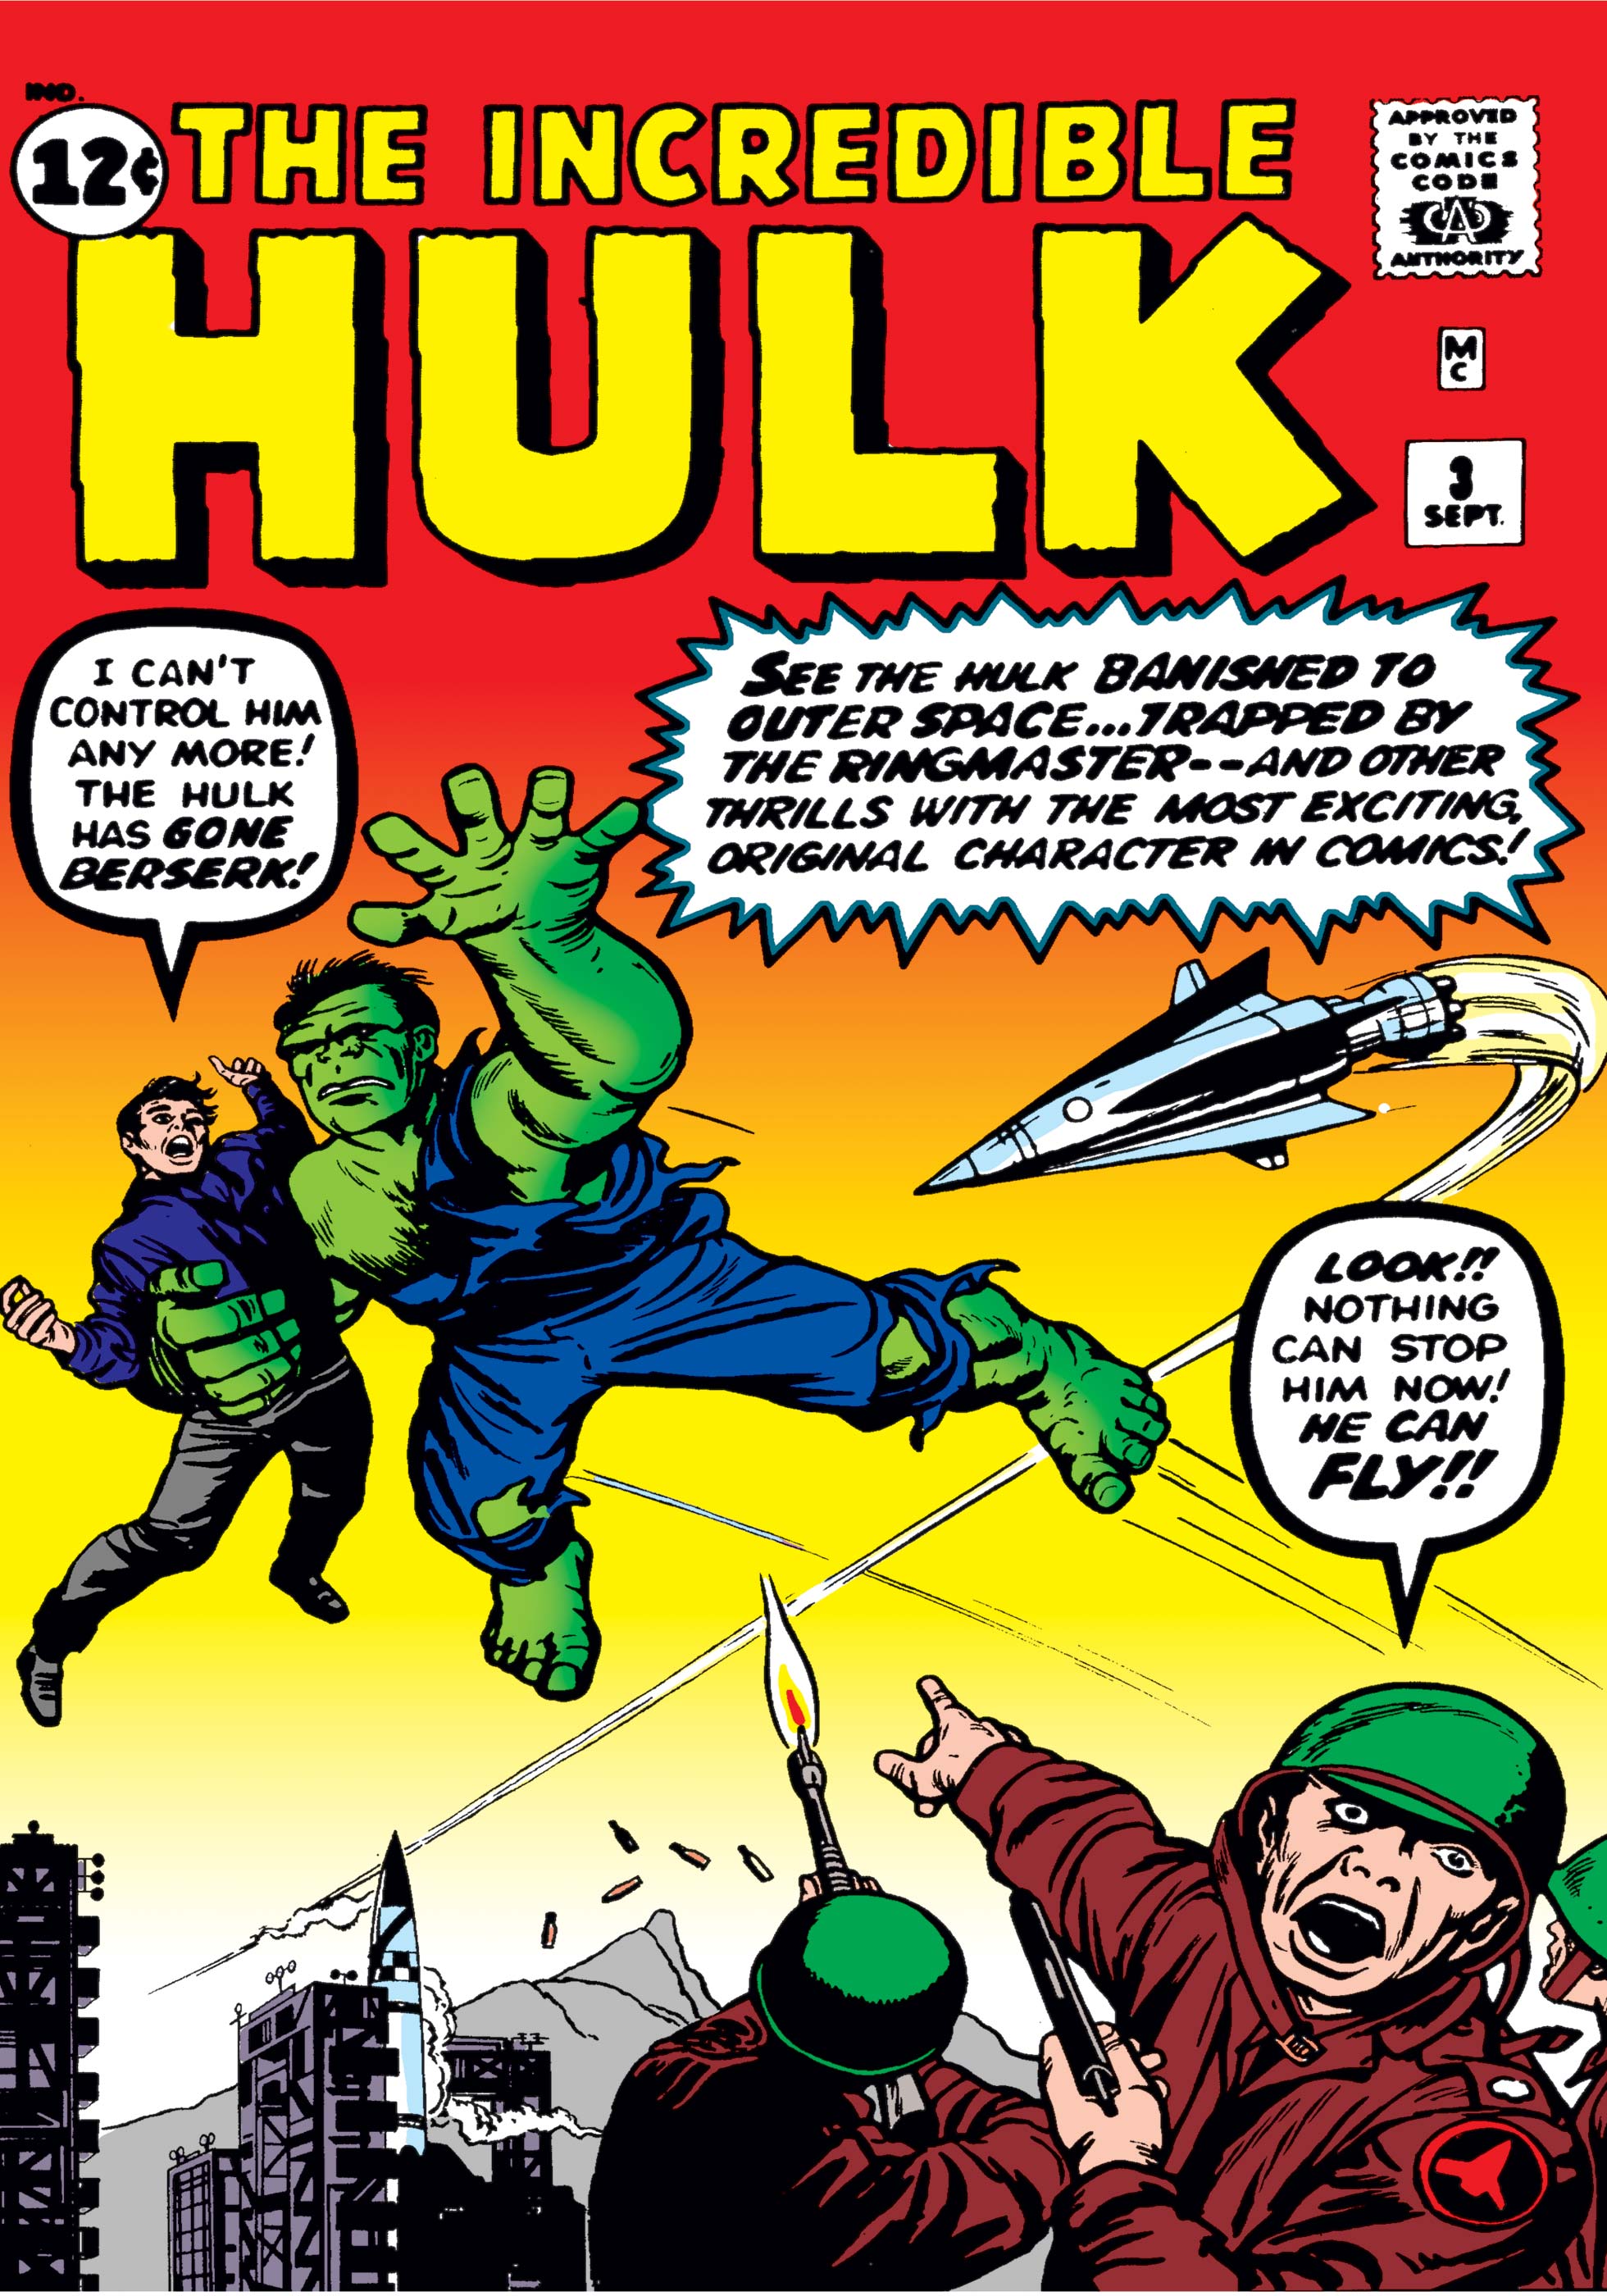 Incredible hulk 3